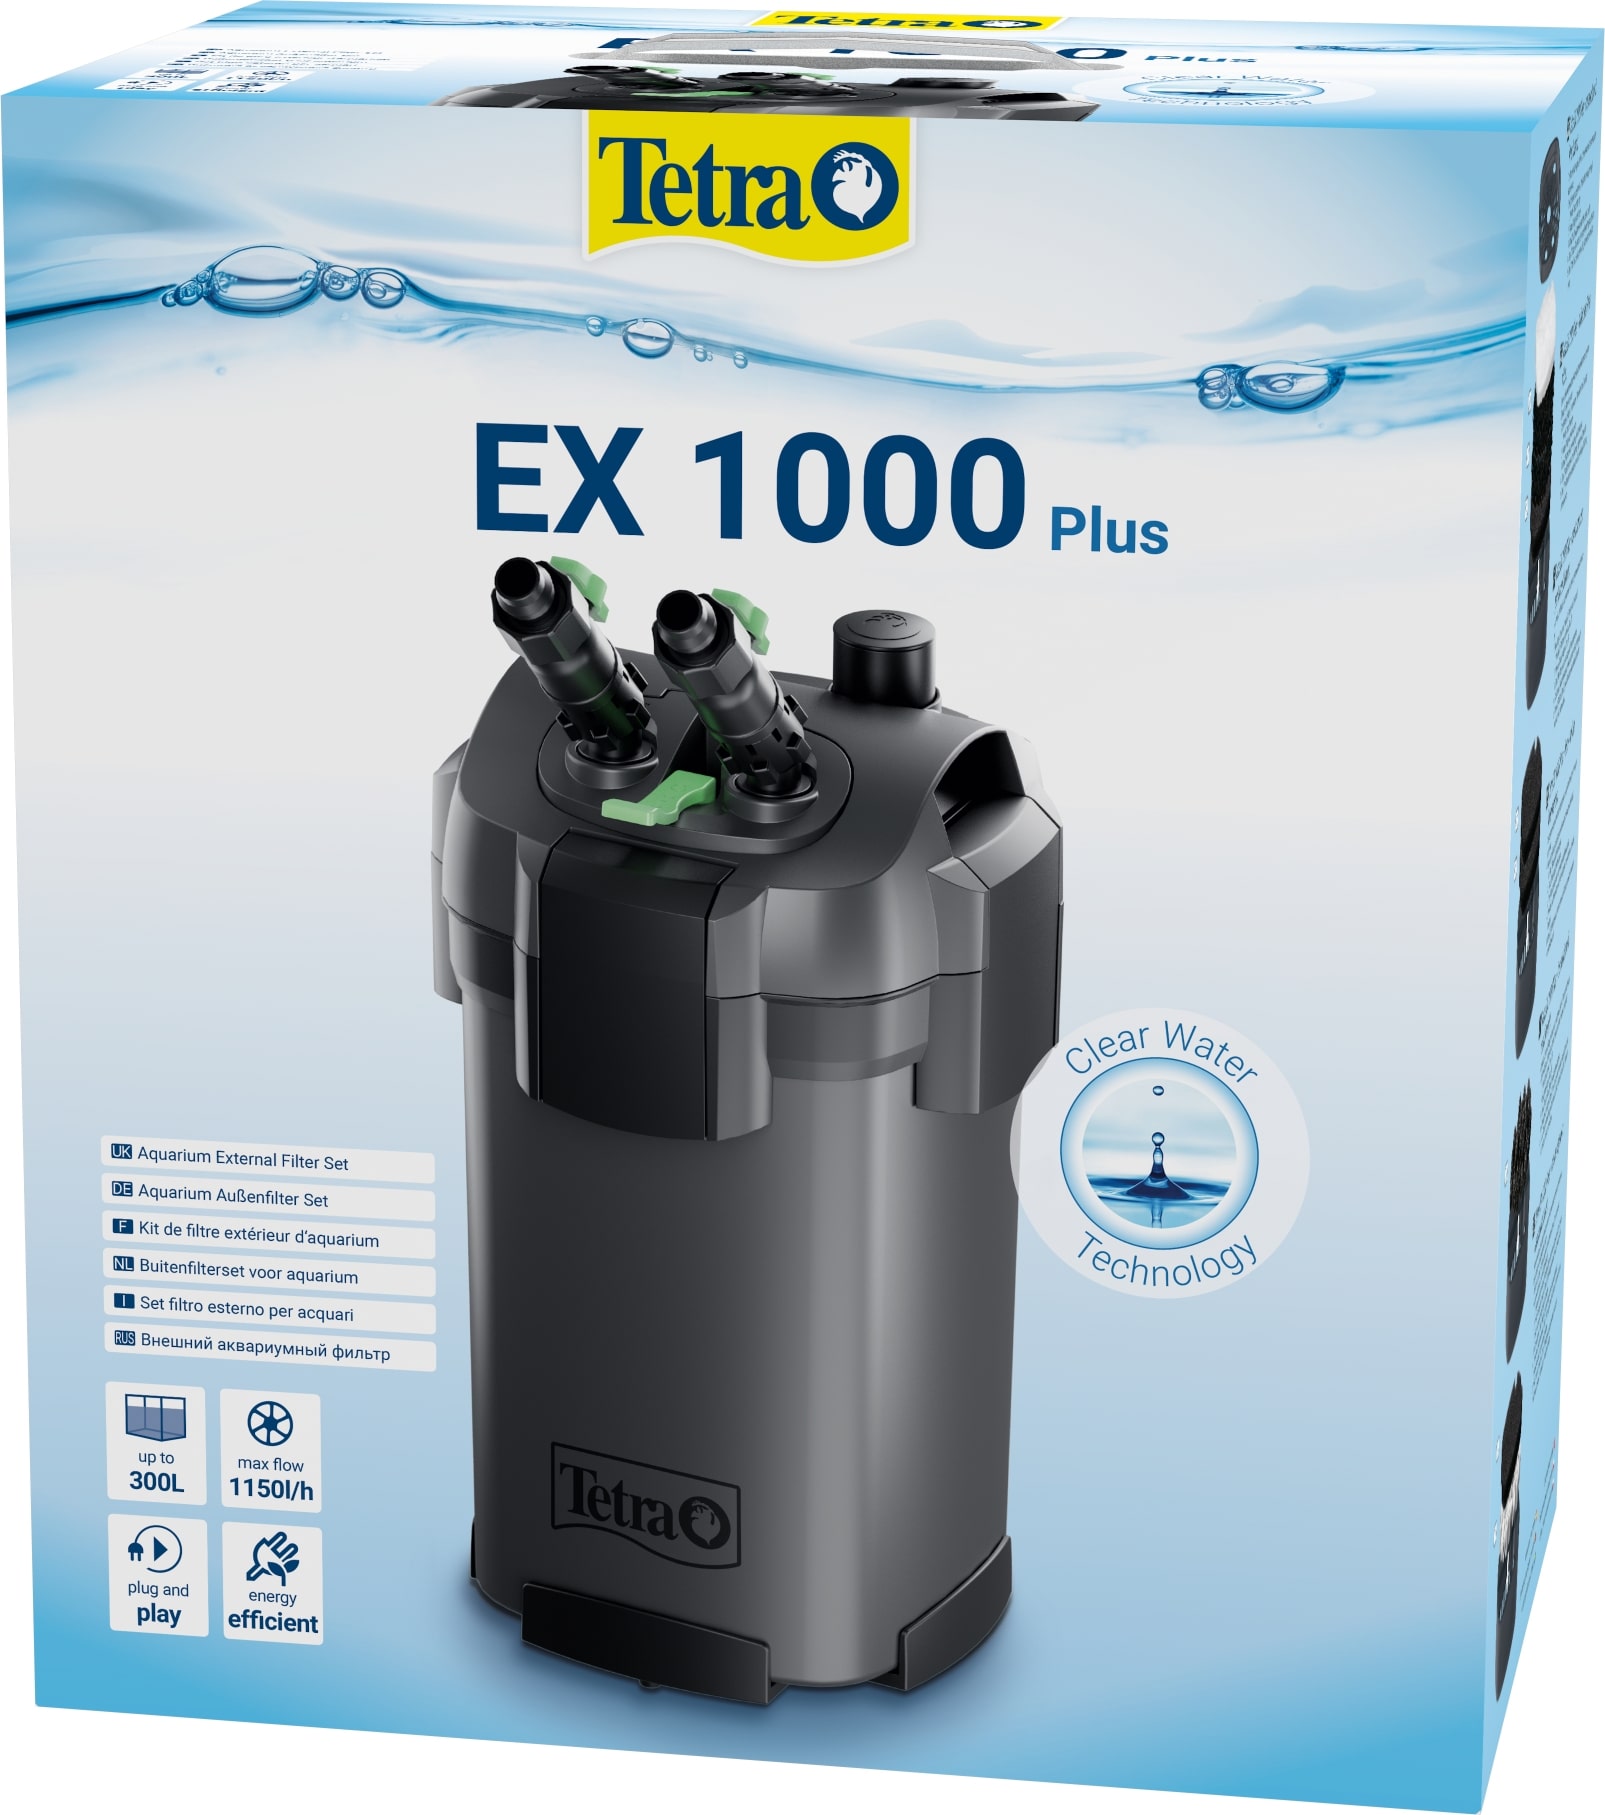 tetra-ex-1000-plus-filtre-externe-790-l-h-performant-et-pret-a-l-emploi-pour-aquarium-de-150-a-300-l-min